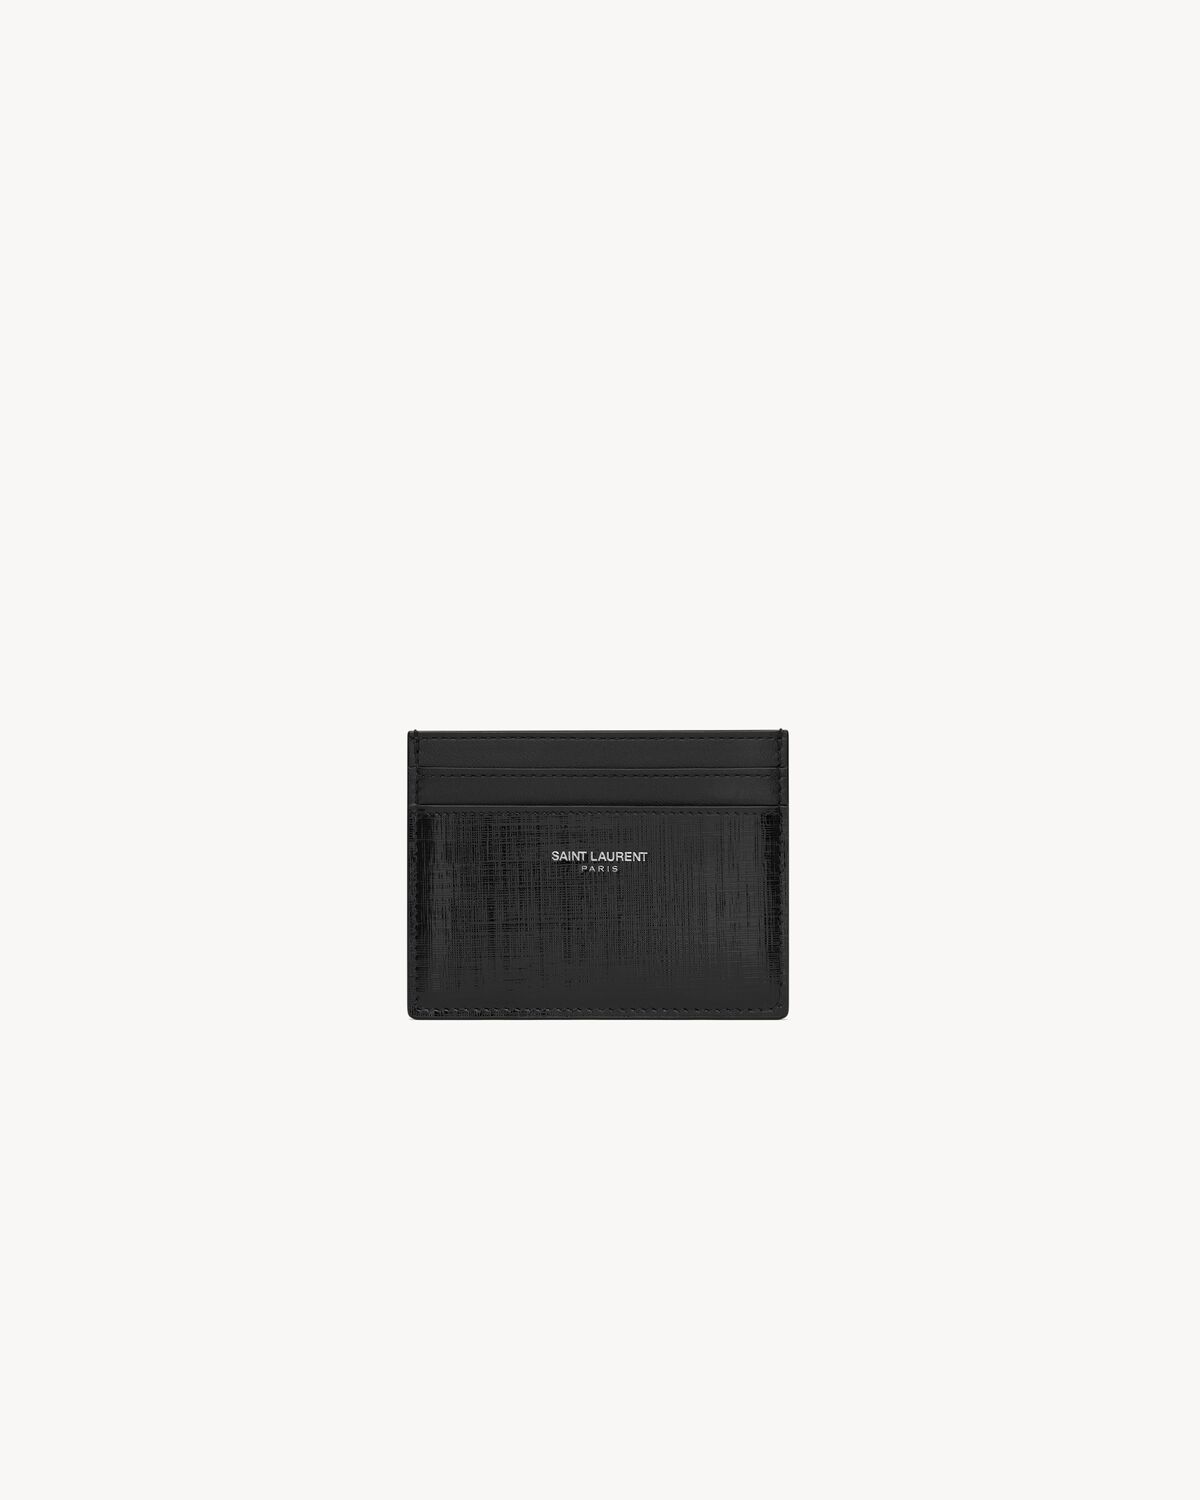 SAINT LAURENT PARIS card case in grid leather